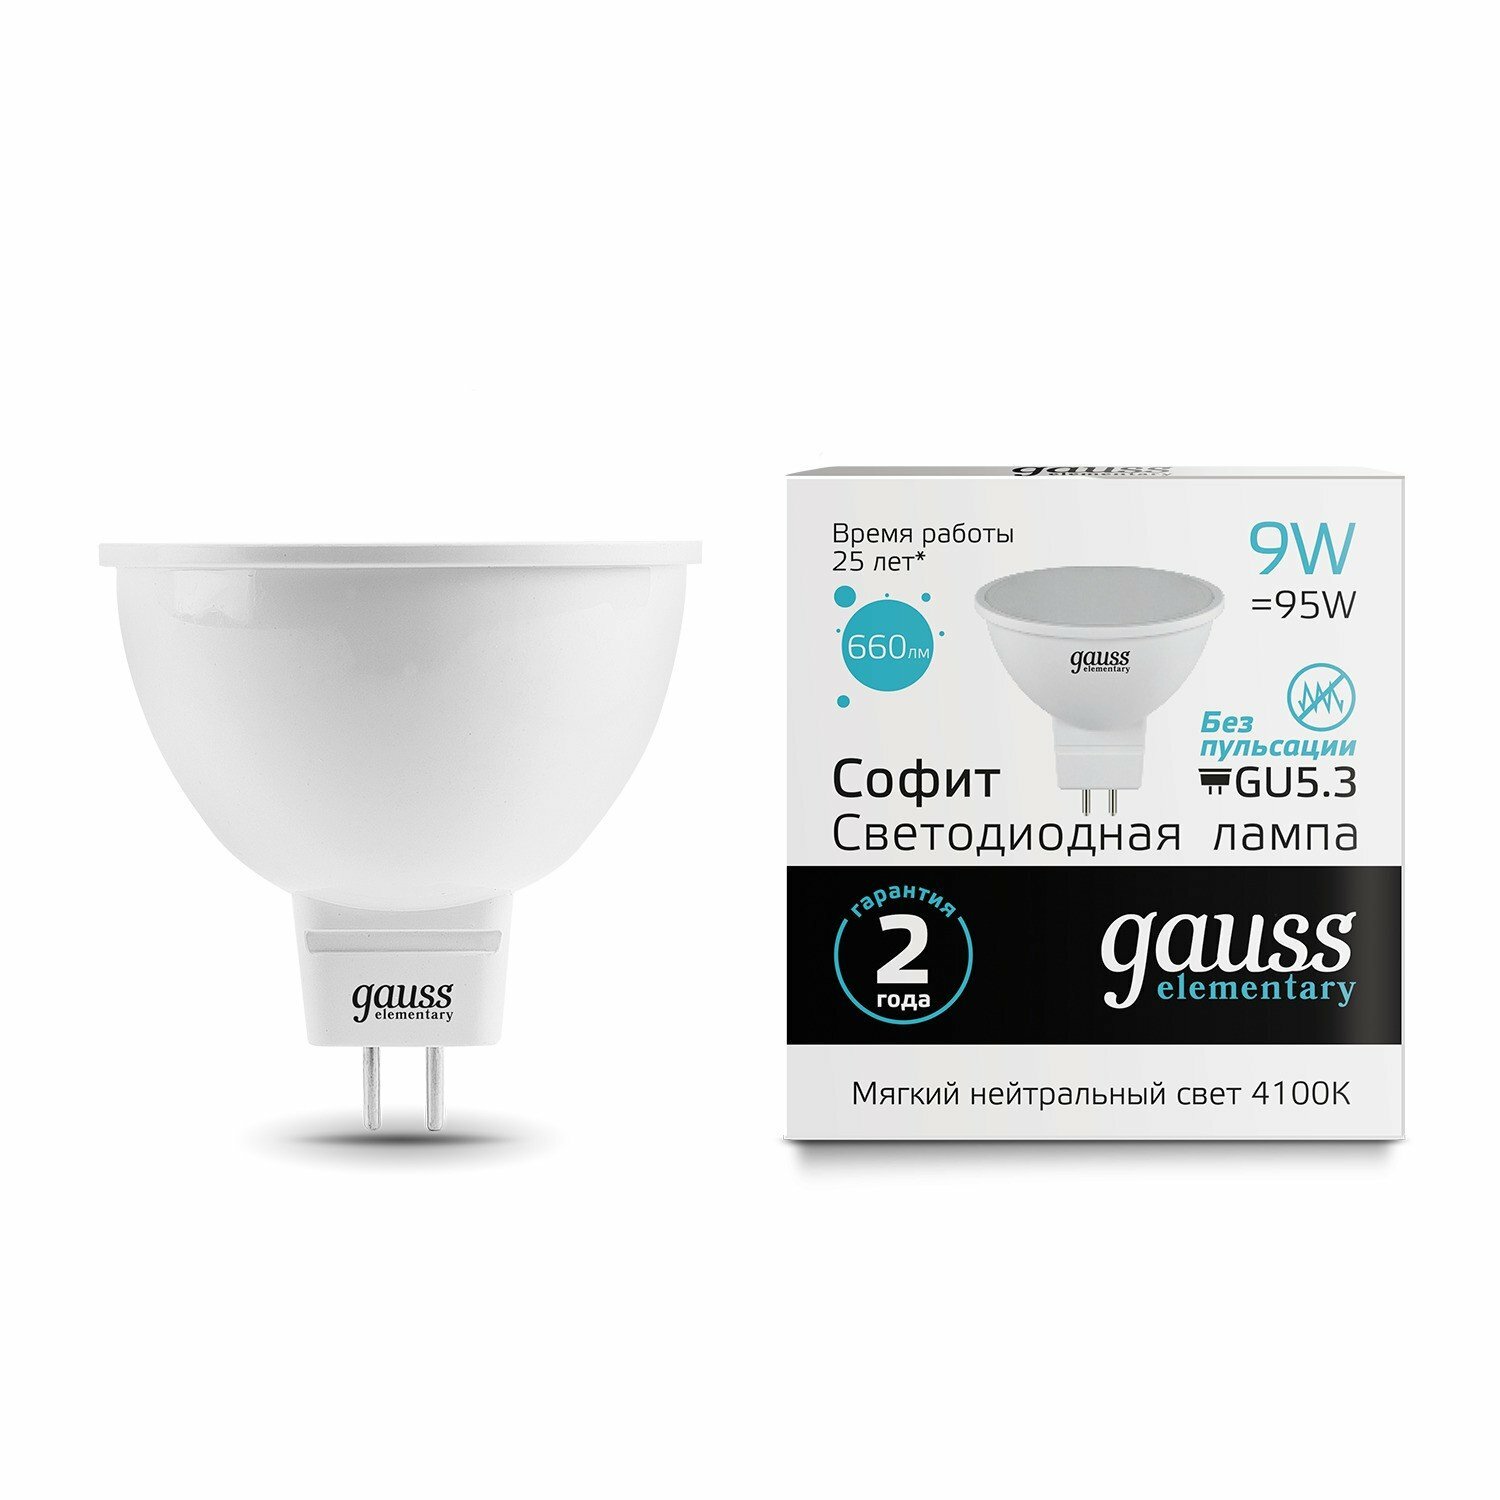 Упаковка светодиодных ламп Gauss Elementary LED MR16 GU5.3 9W 4100K 13529 x10 - фотография № 16